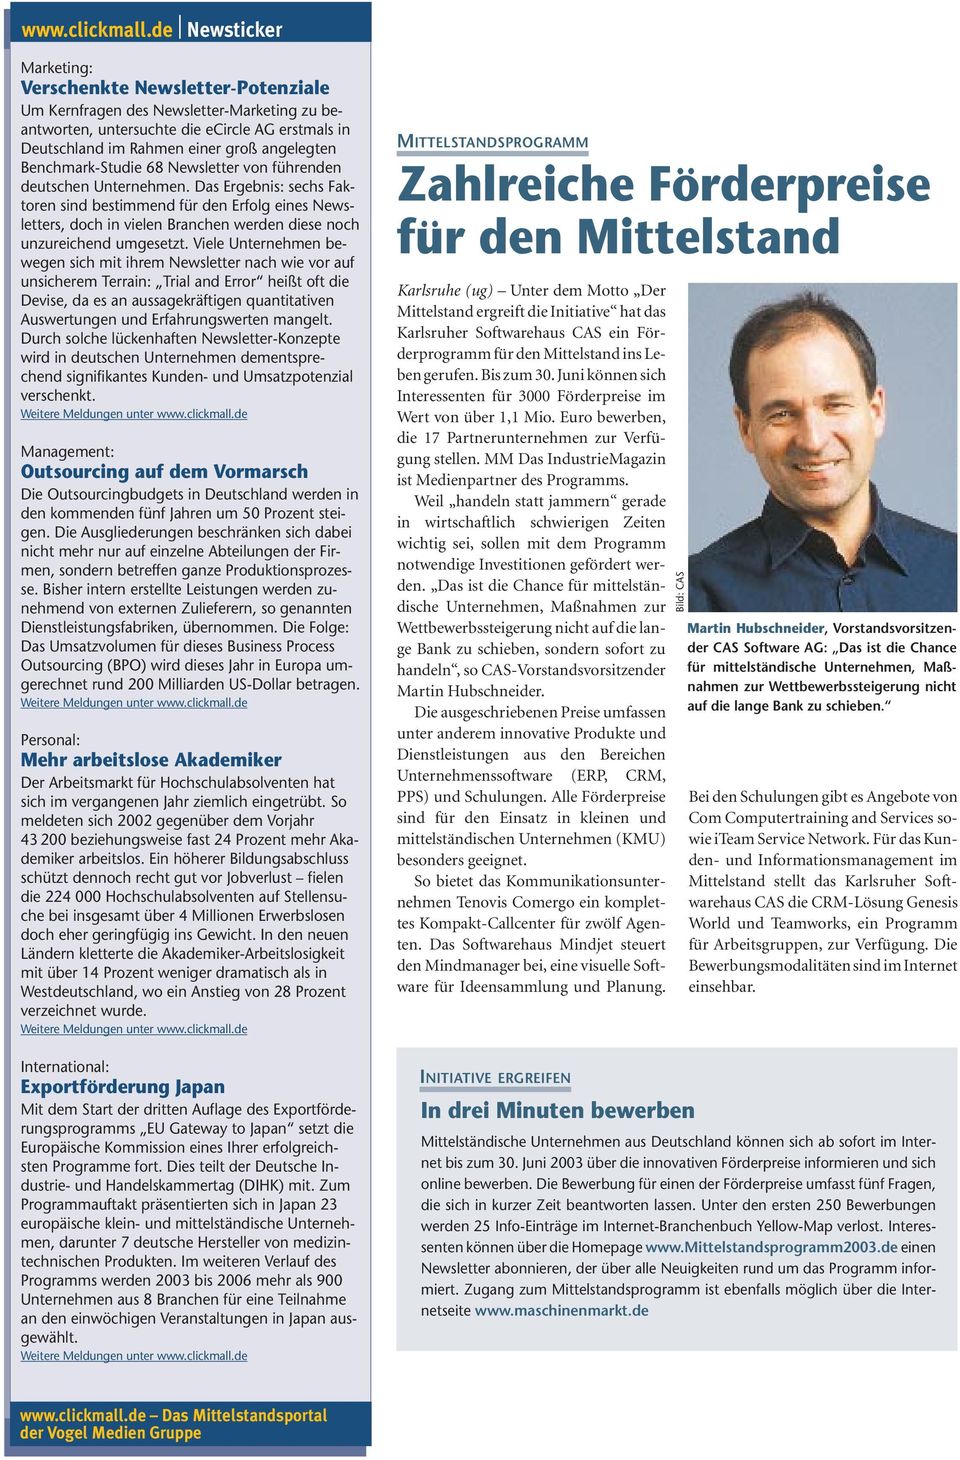 Benchmark-Studie 68 Newsletter von führenden deutschen Unternehmen.